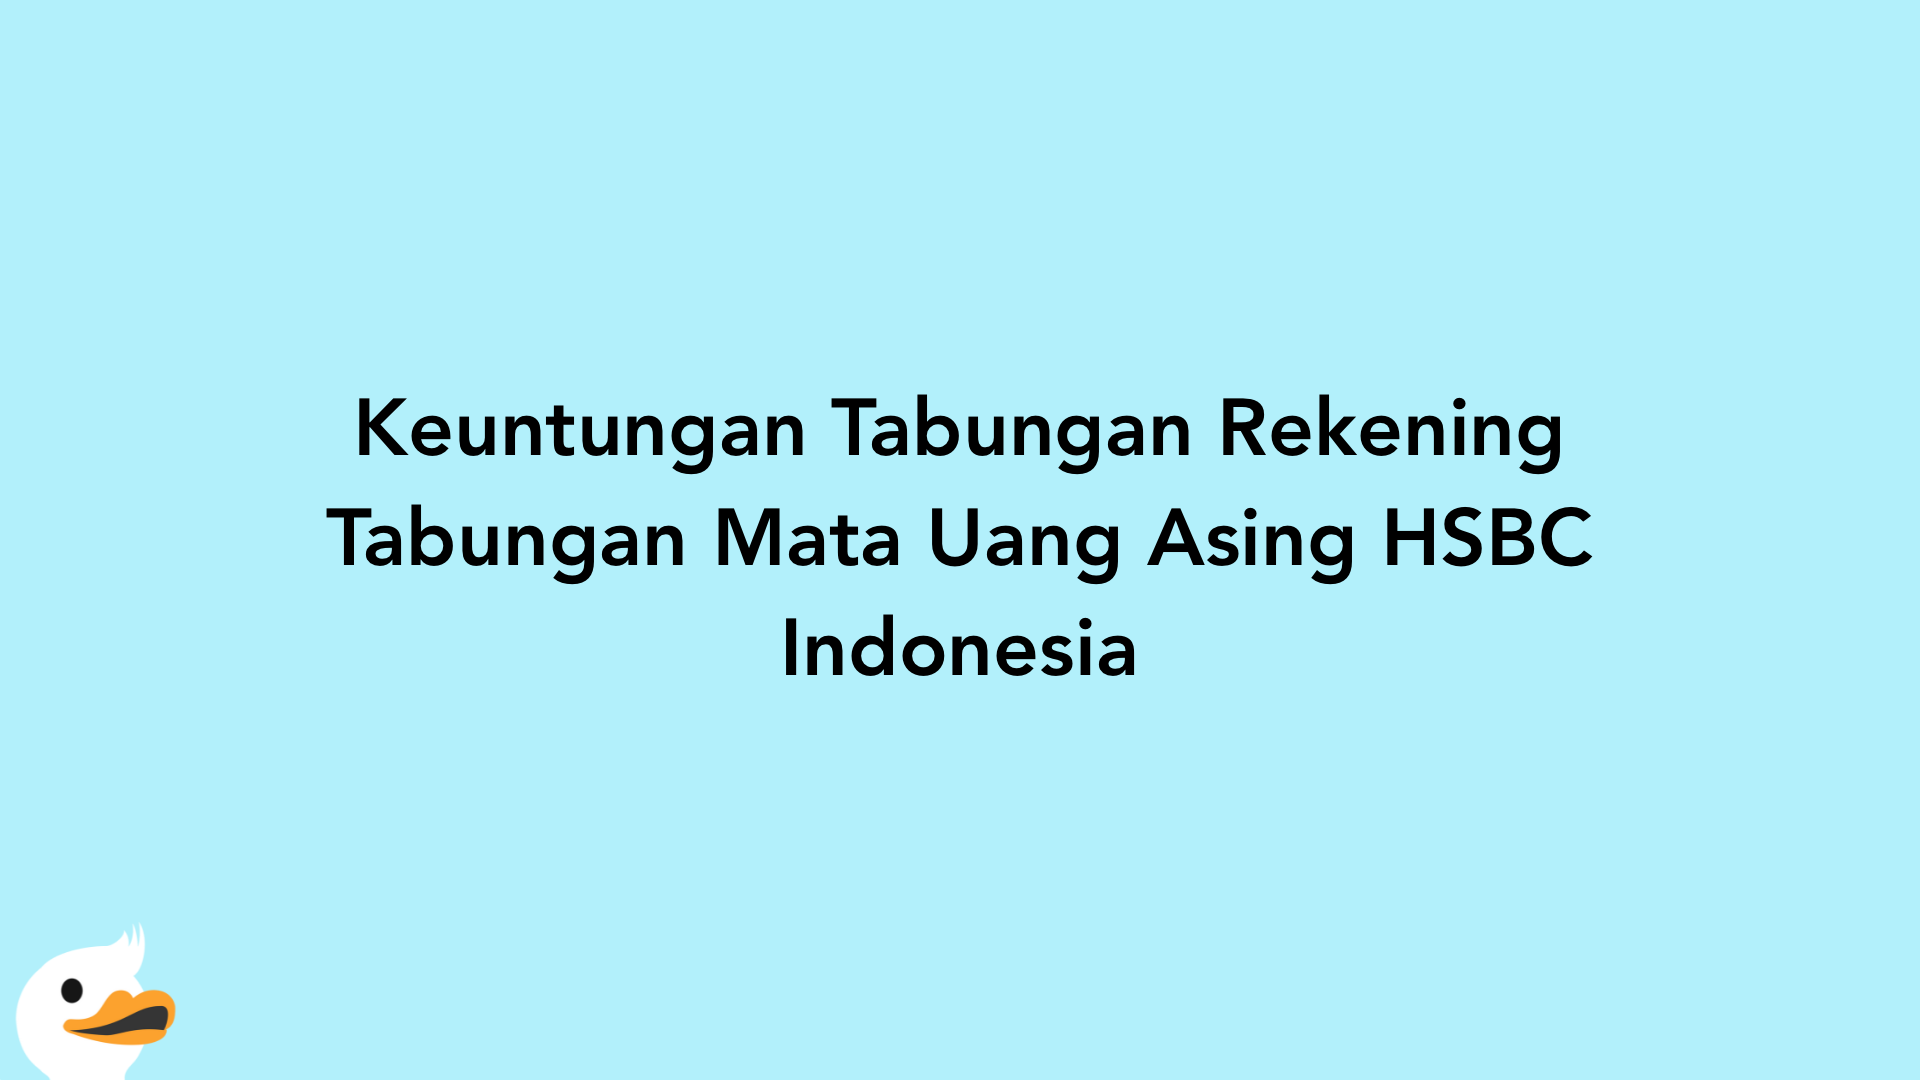 Keuntungan Tabungan Rekening Tabungan Mata Uang Asing HSBC Indonesia